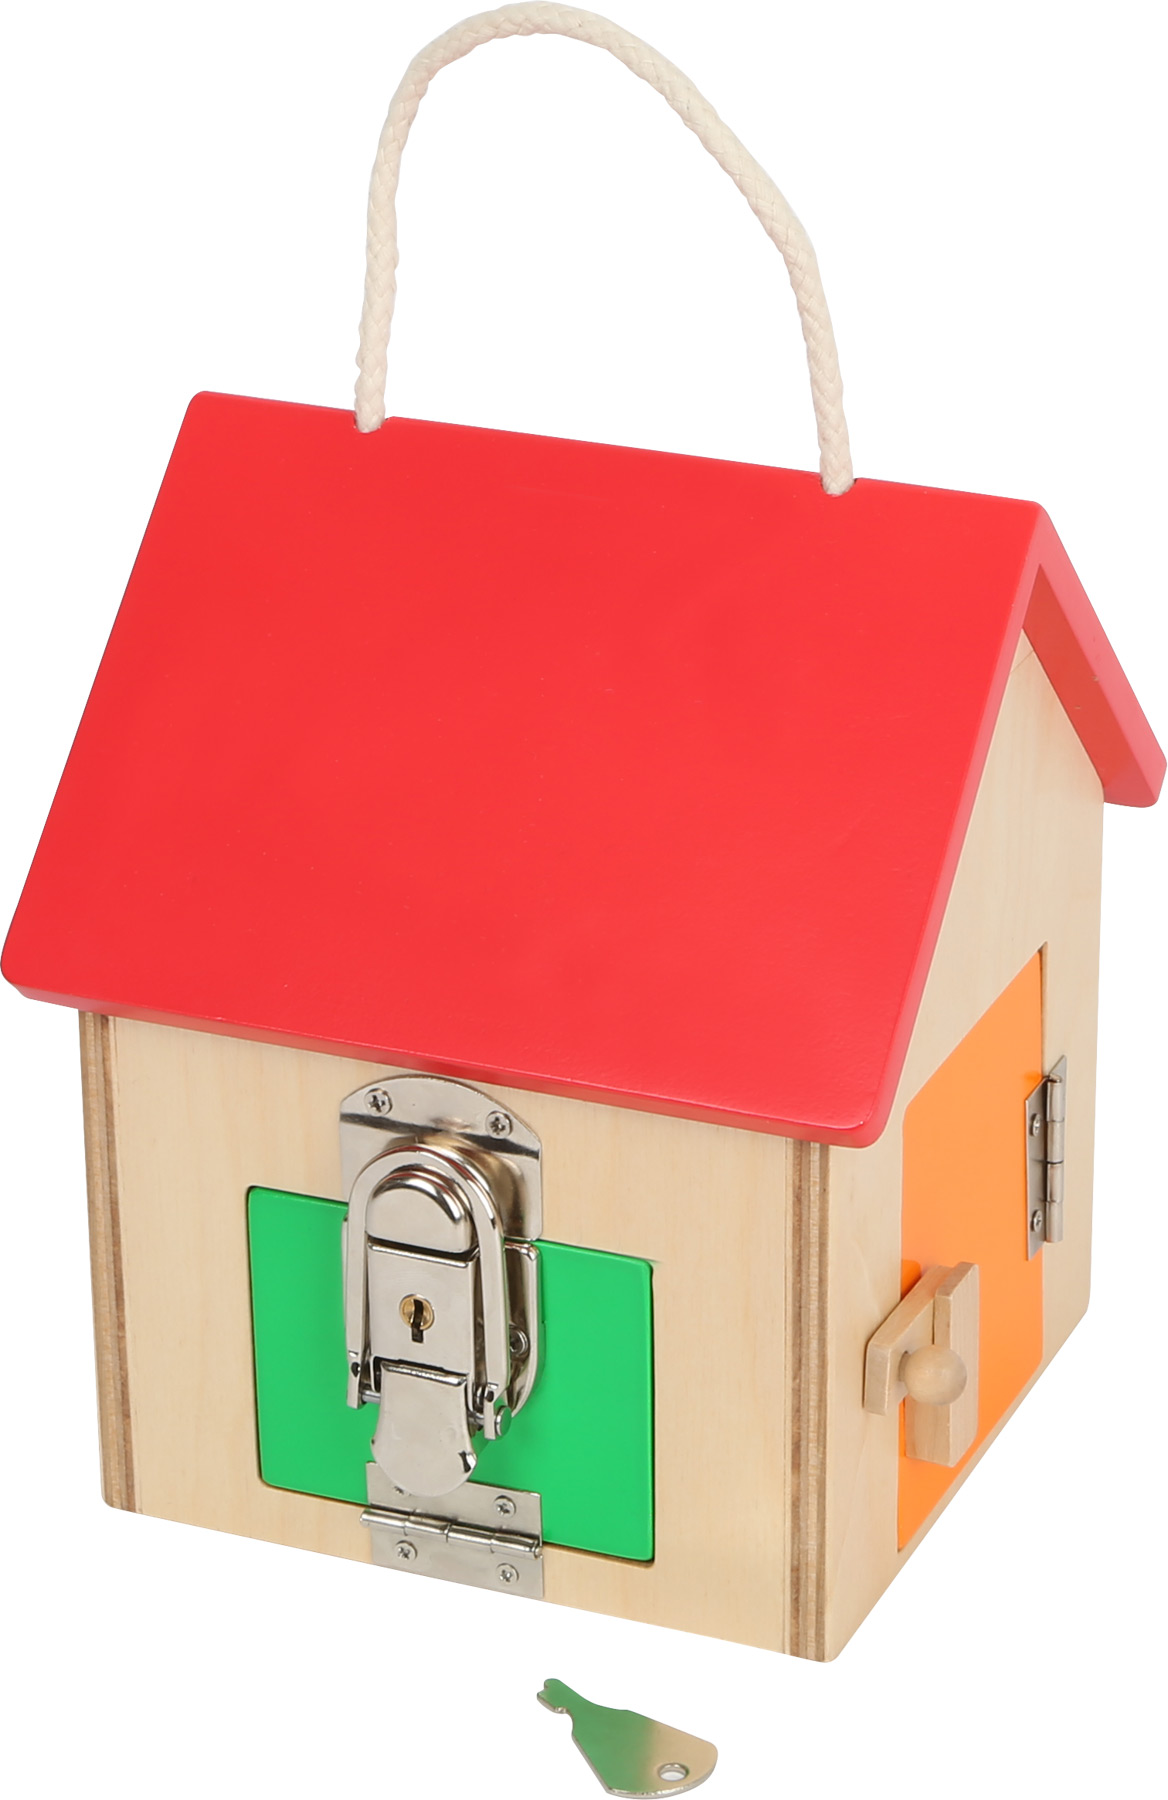 Mini casita de cerraduras de madera-ukitu juguetes